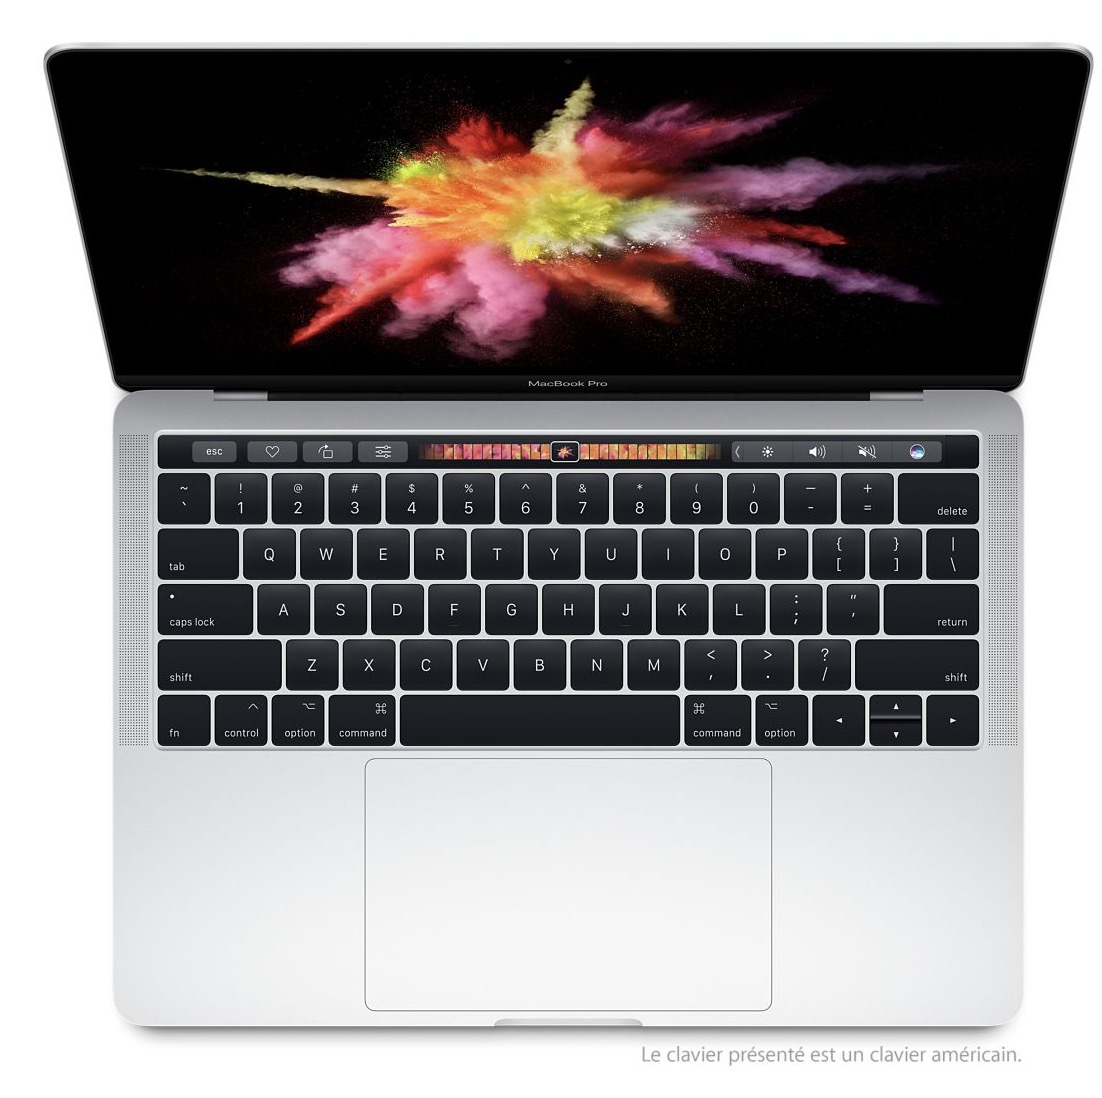 Refurb : plein de nouvelles configs de MacBook Pro 13" 2017 ! Et des Mac mini à 459€ !